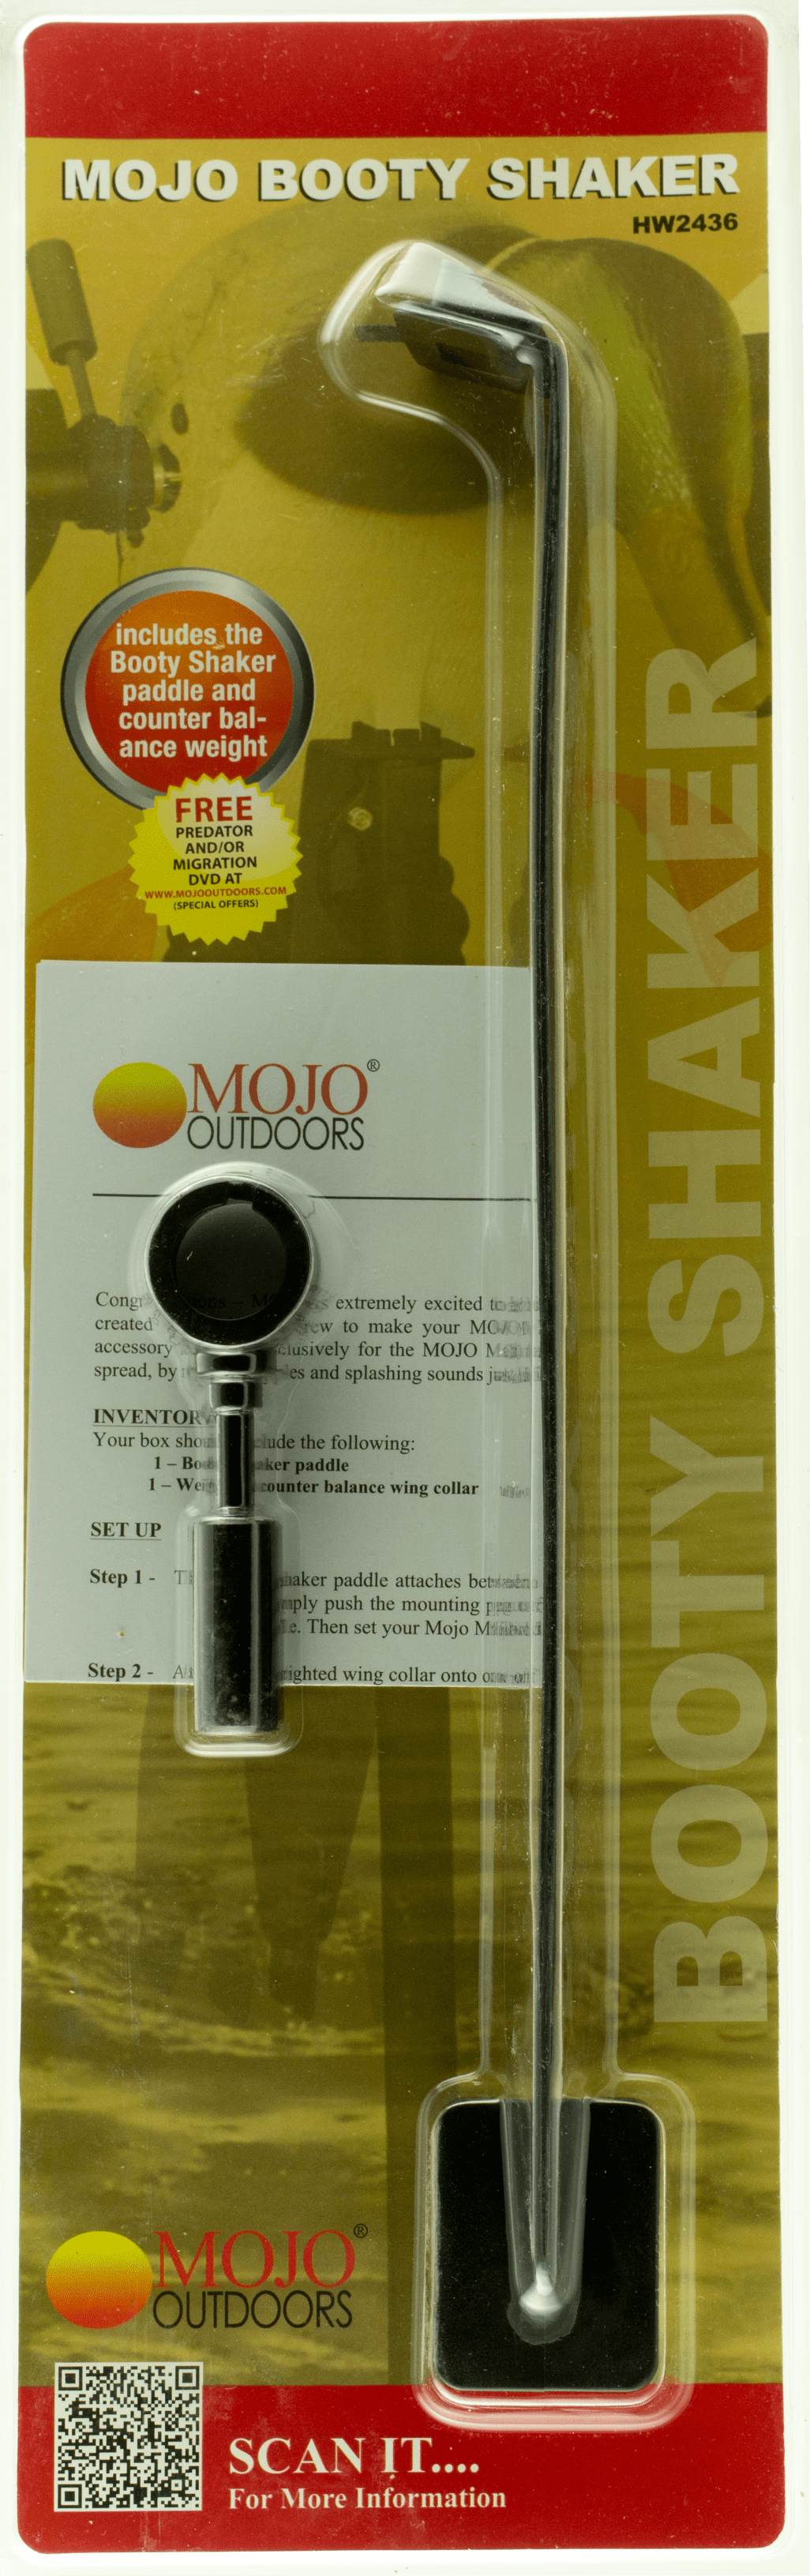 Mojo Mojo Decoy, Mojo Hw2436 Booty Shaker Hunting